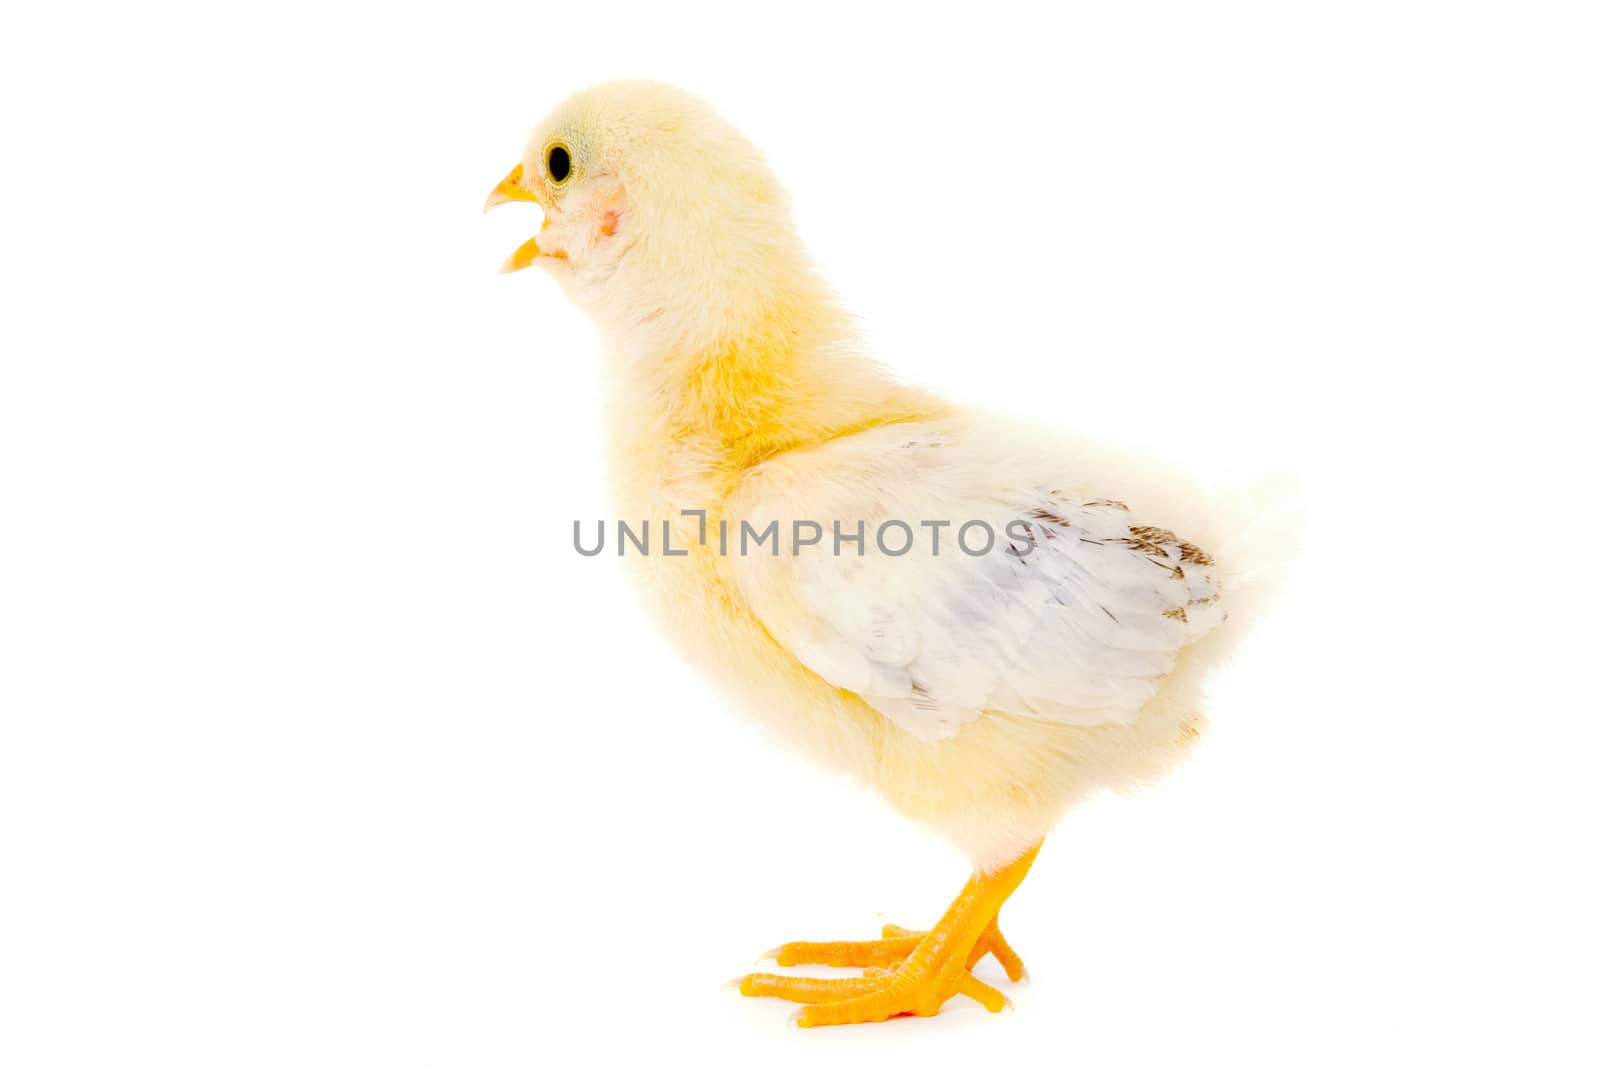 Chicken baby by cfoto